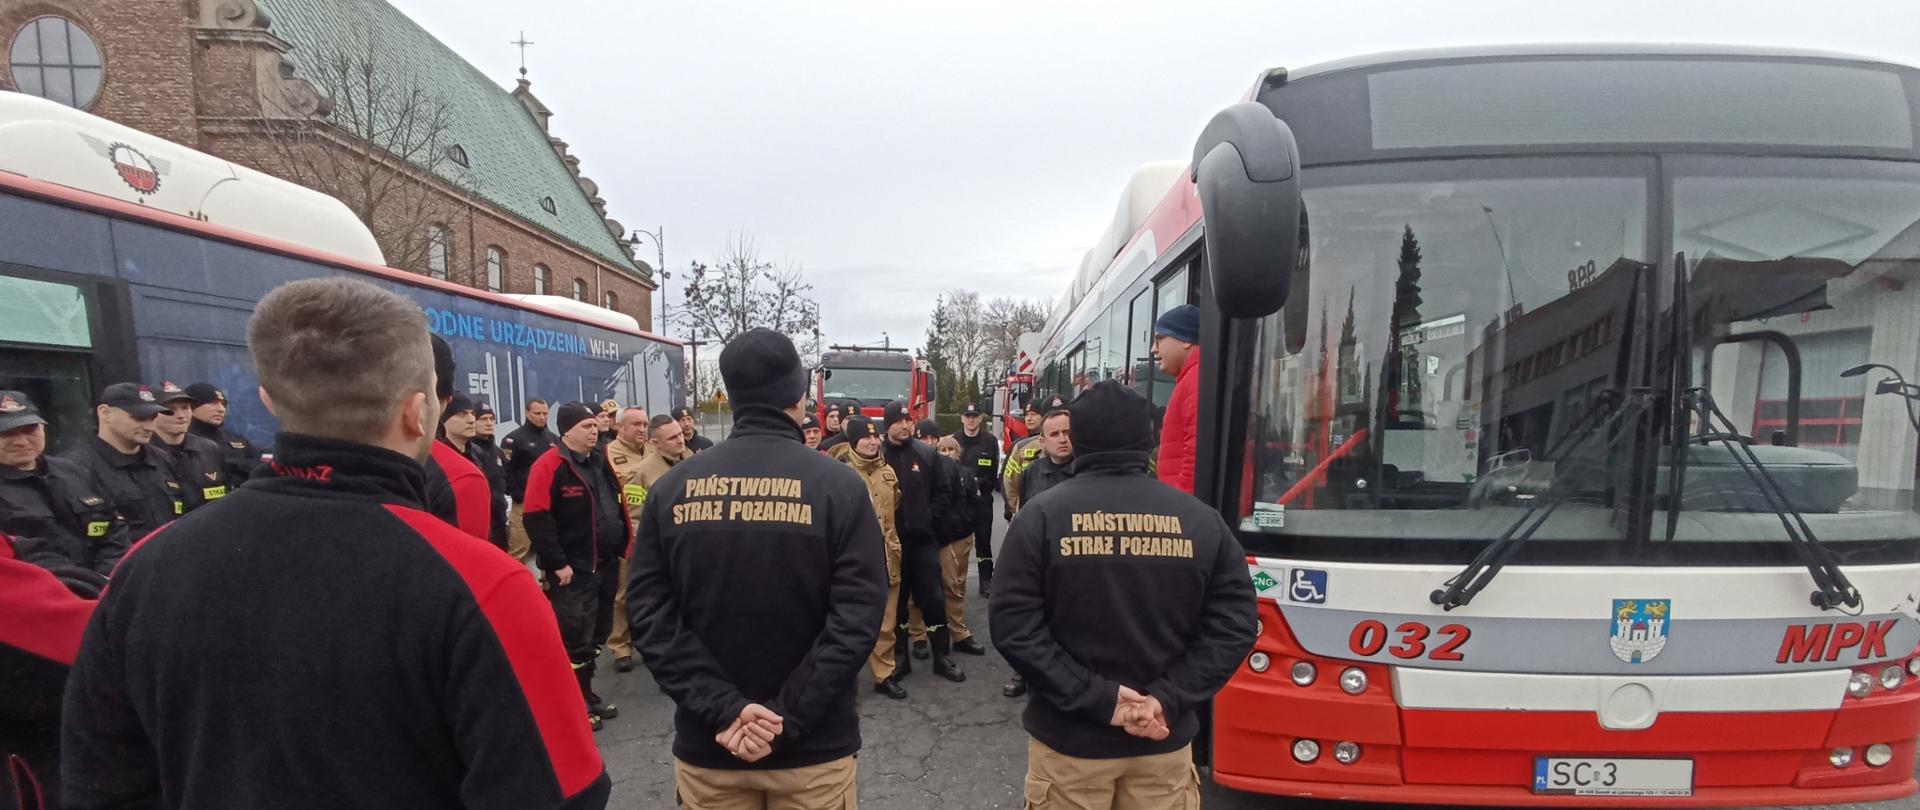 Na zdjęciu dwa autobusy miejskie obok nich ustawieni strażacy w umundurowaniu służbowym